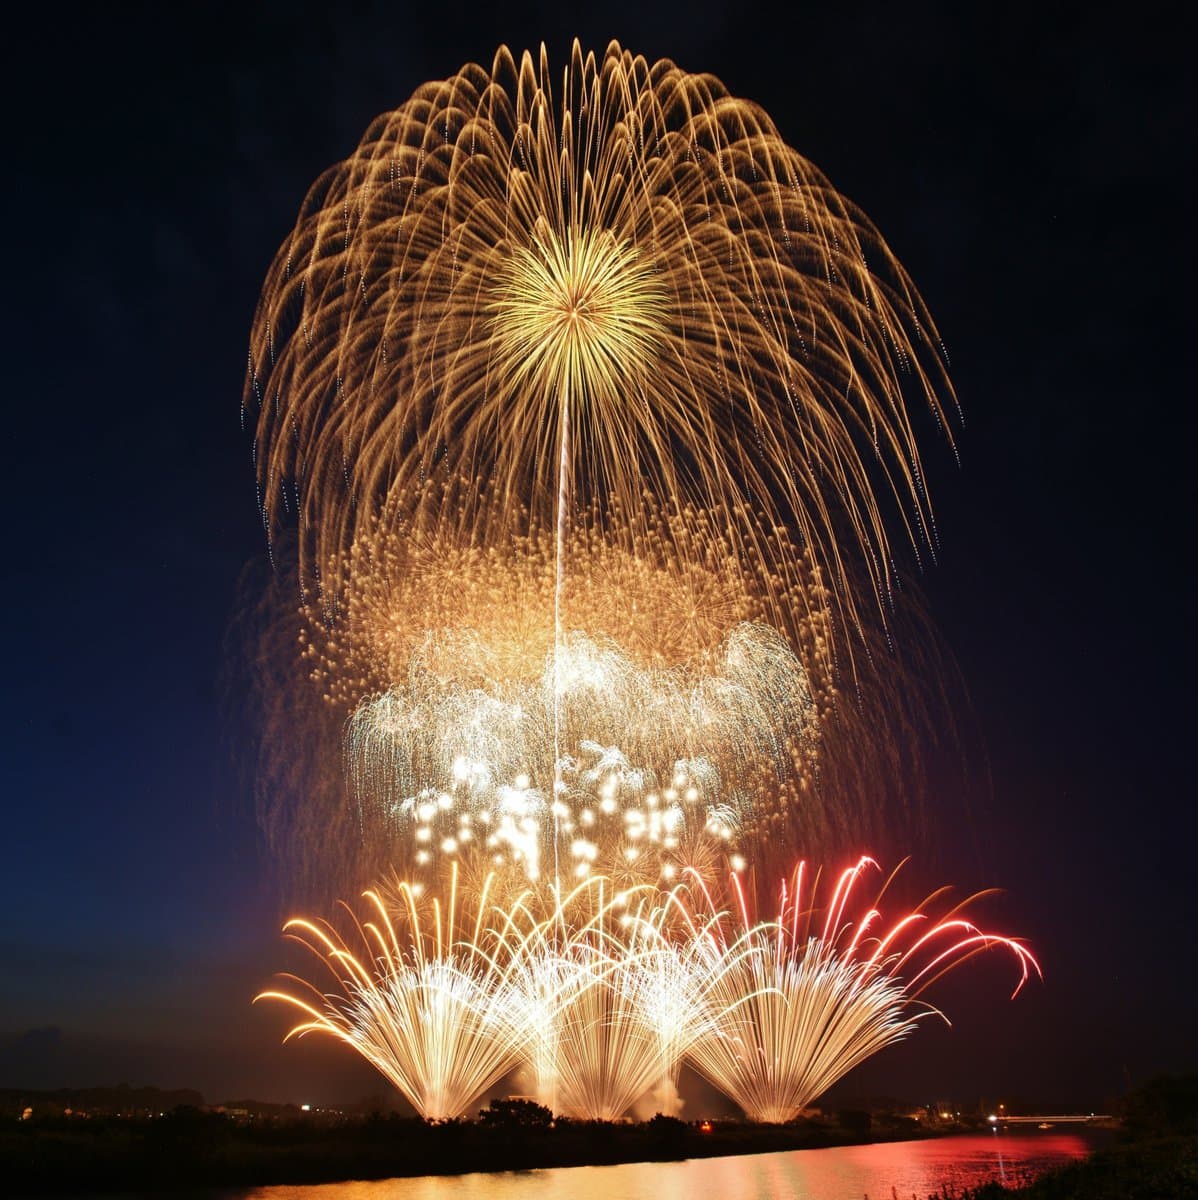 毎年8月に江戸崎総合運動公園で開催される「いなしき夏まつり花火大会」